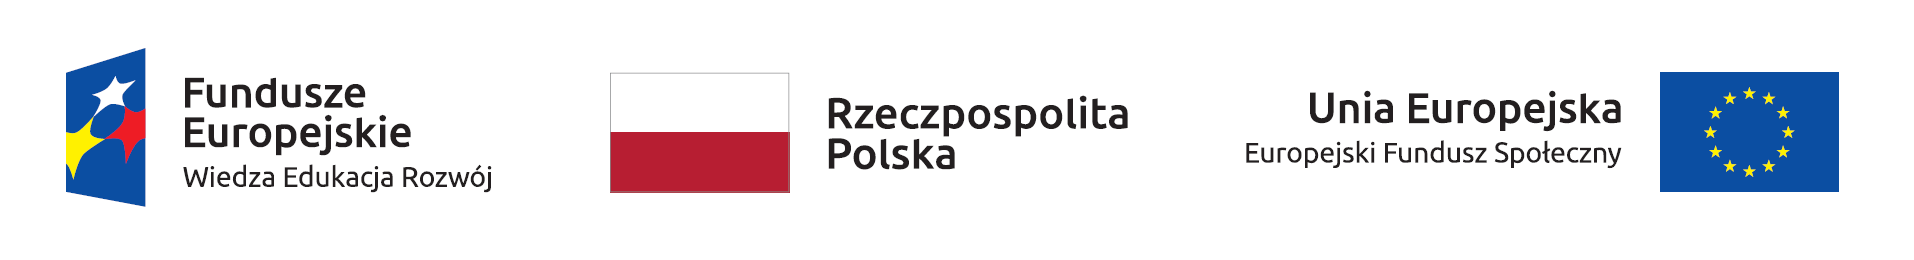 Logo Fundusze Europejskie Wiedza Edukacja Rozwój, Rzeczpospolita Polska, Unia Europejska Europejski Fundusz Społeczny